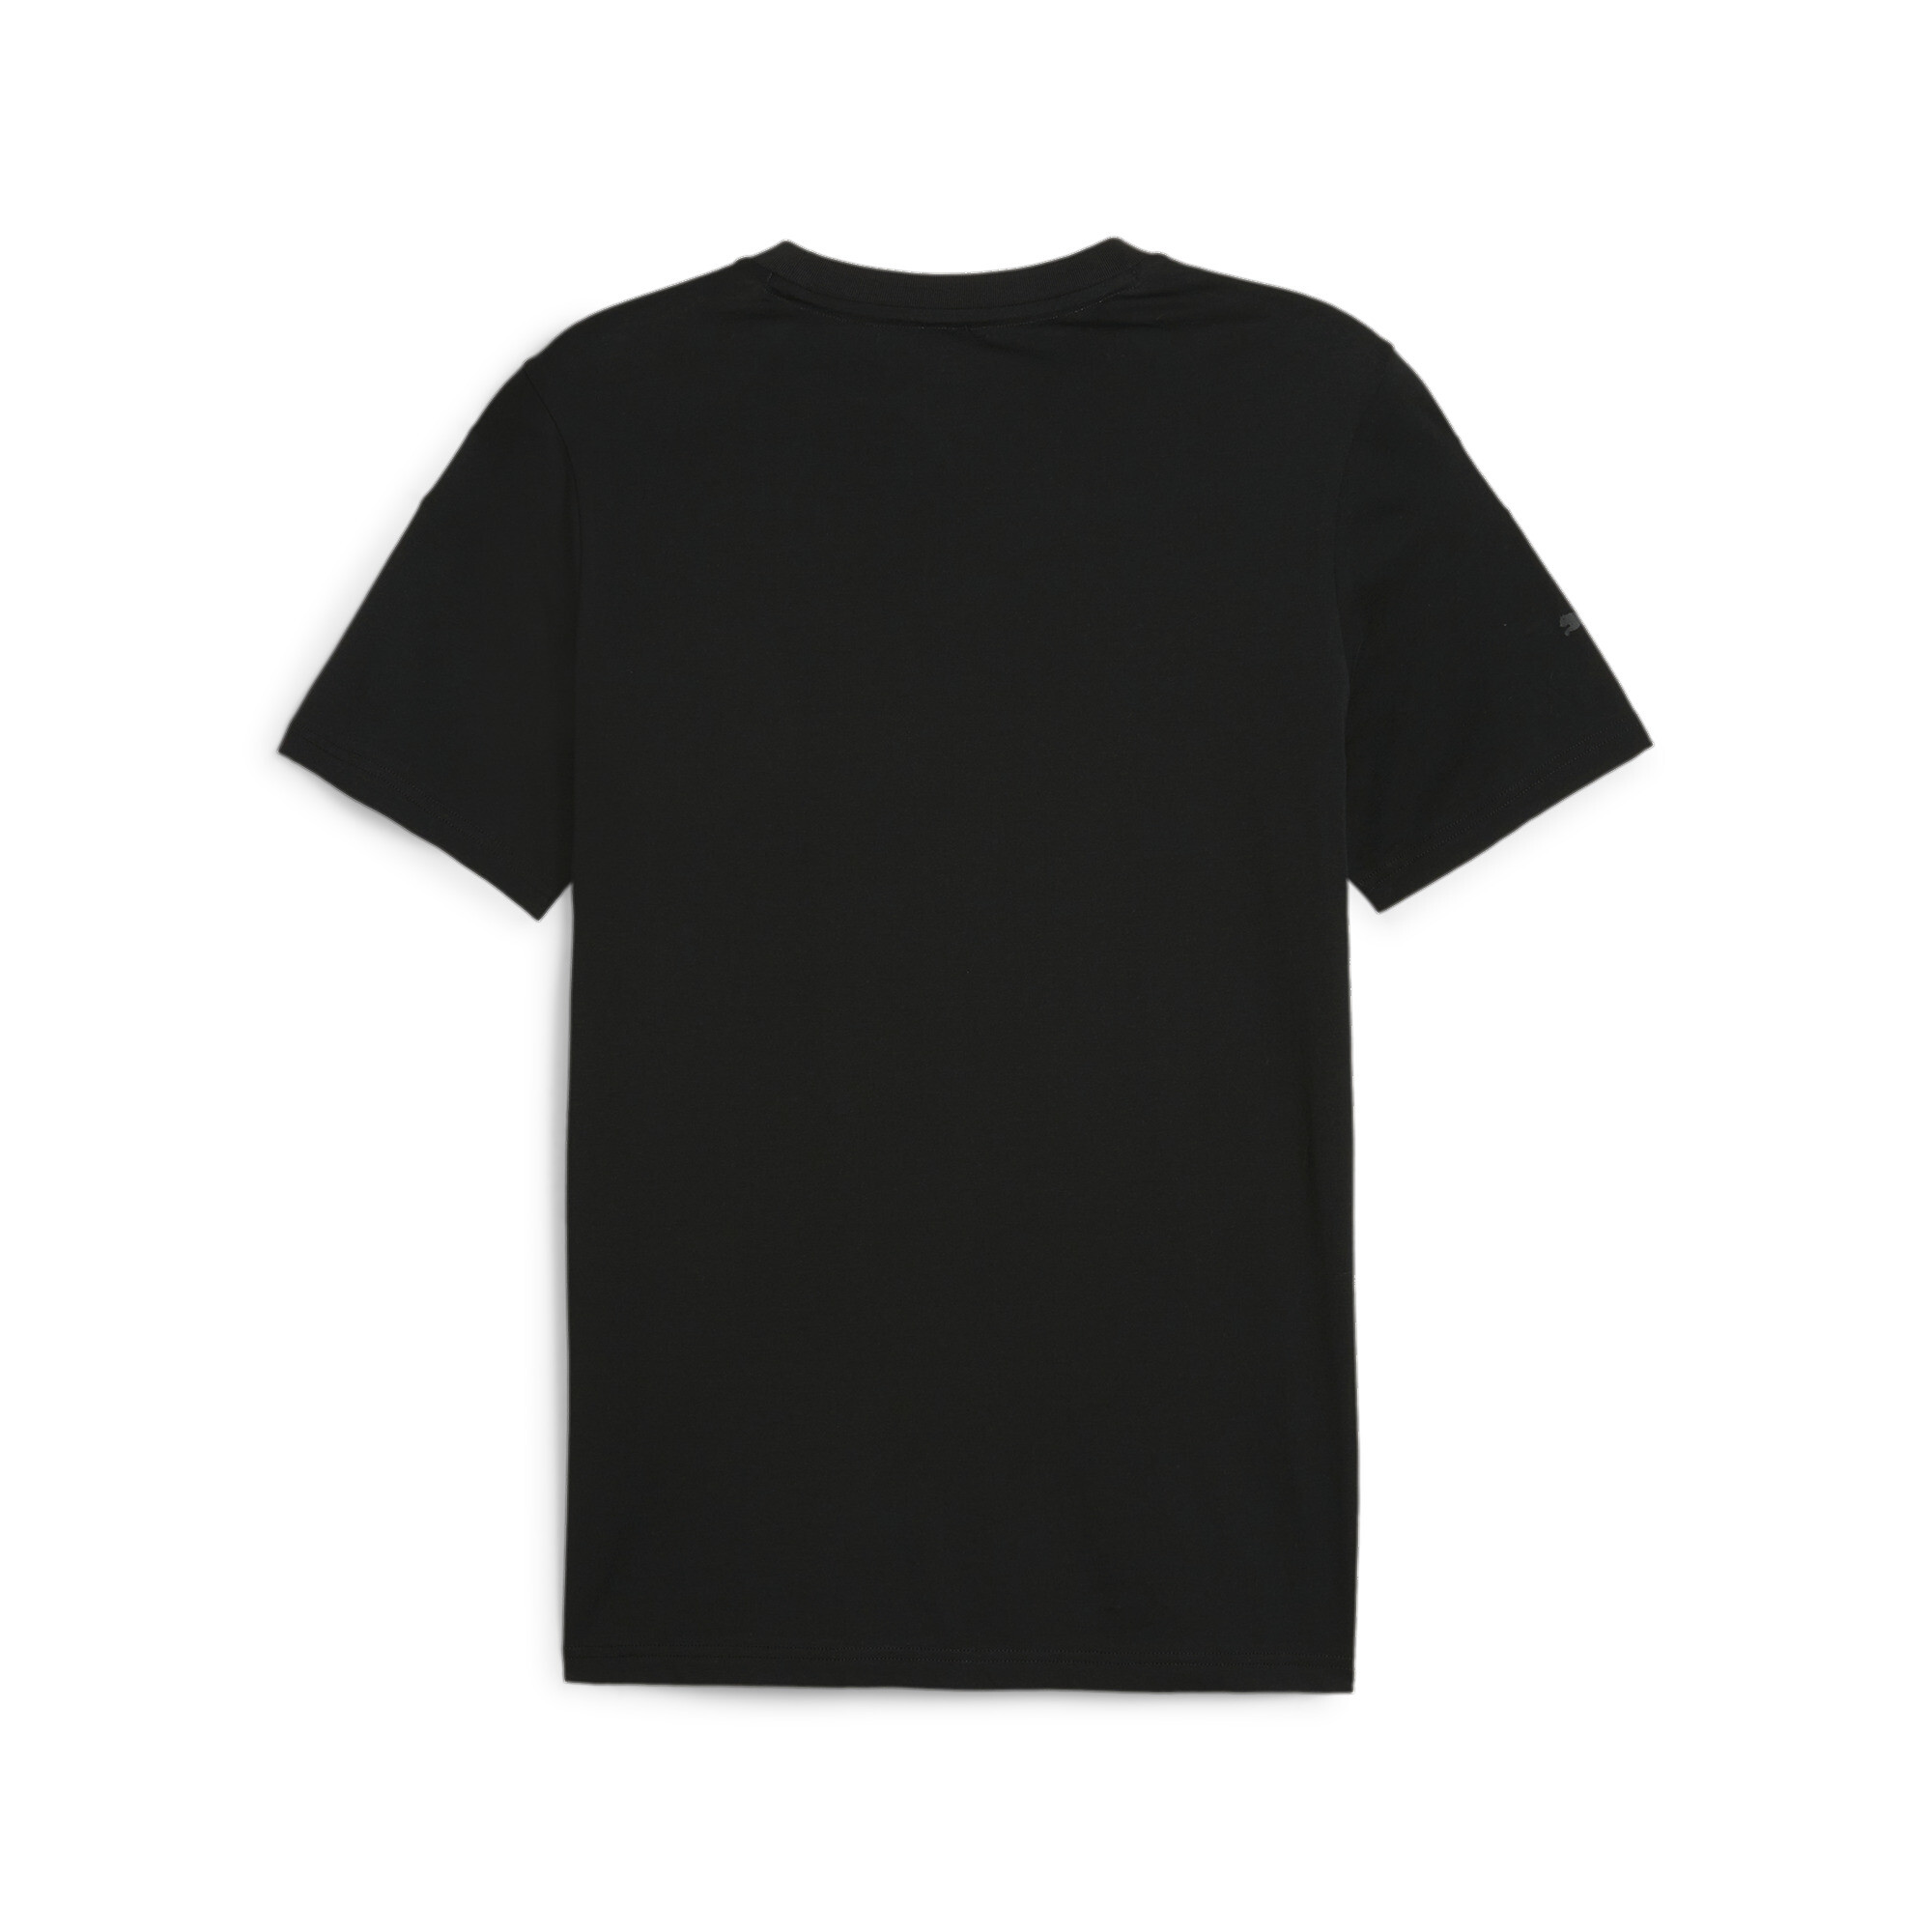 Men's Puma AMG Motorsports T-Shirt, Black, Size XS, Clothing